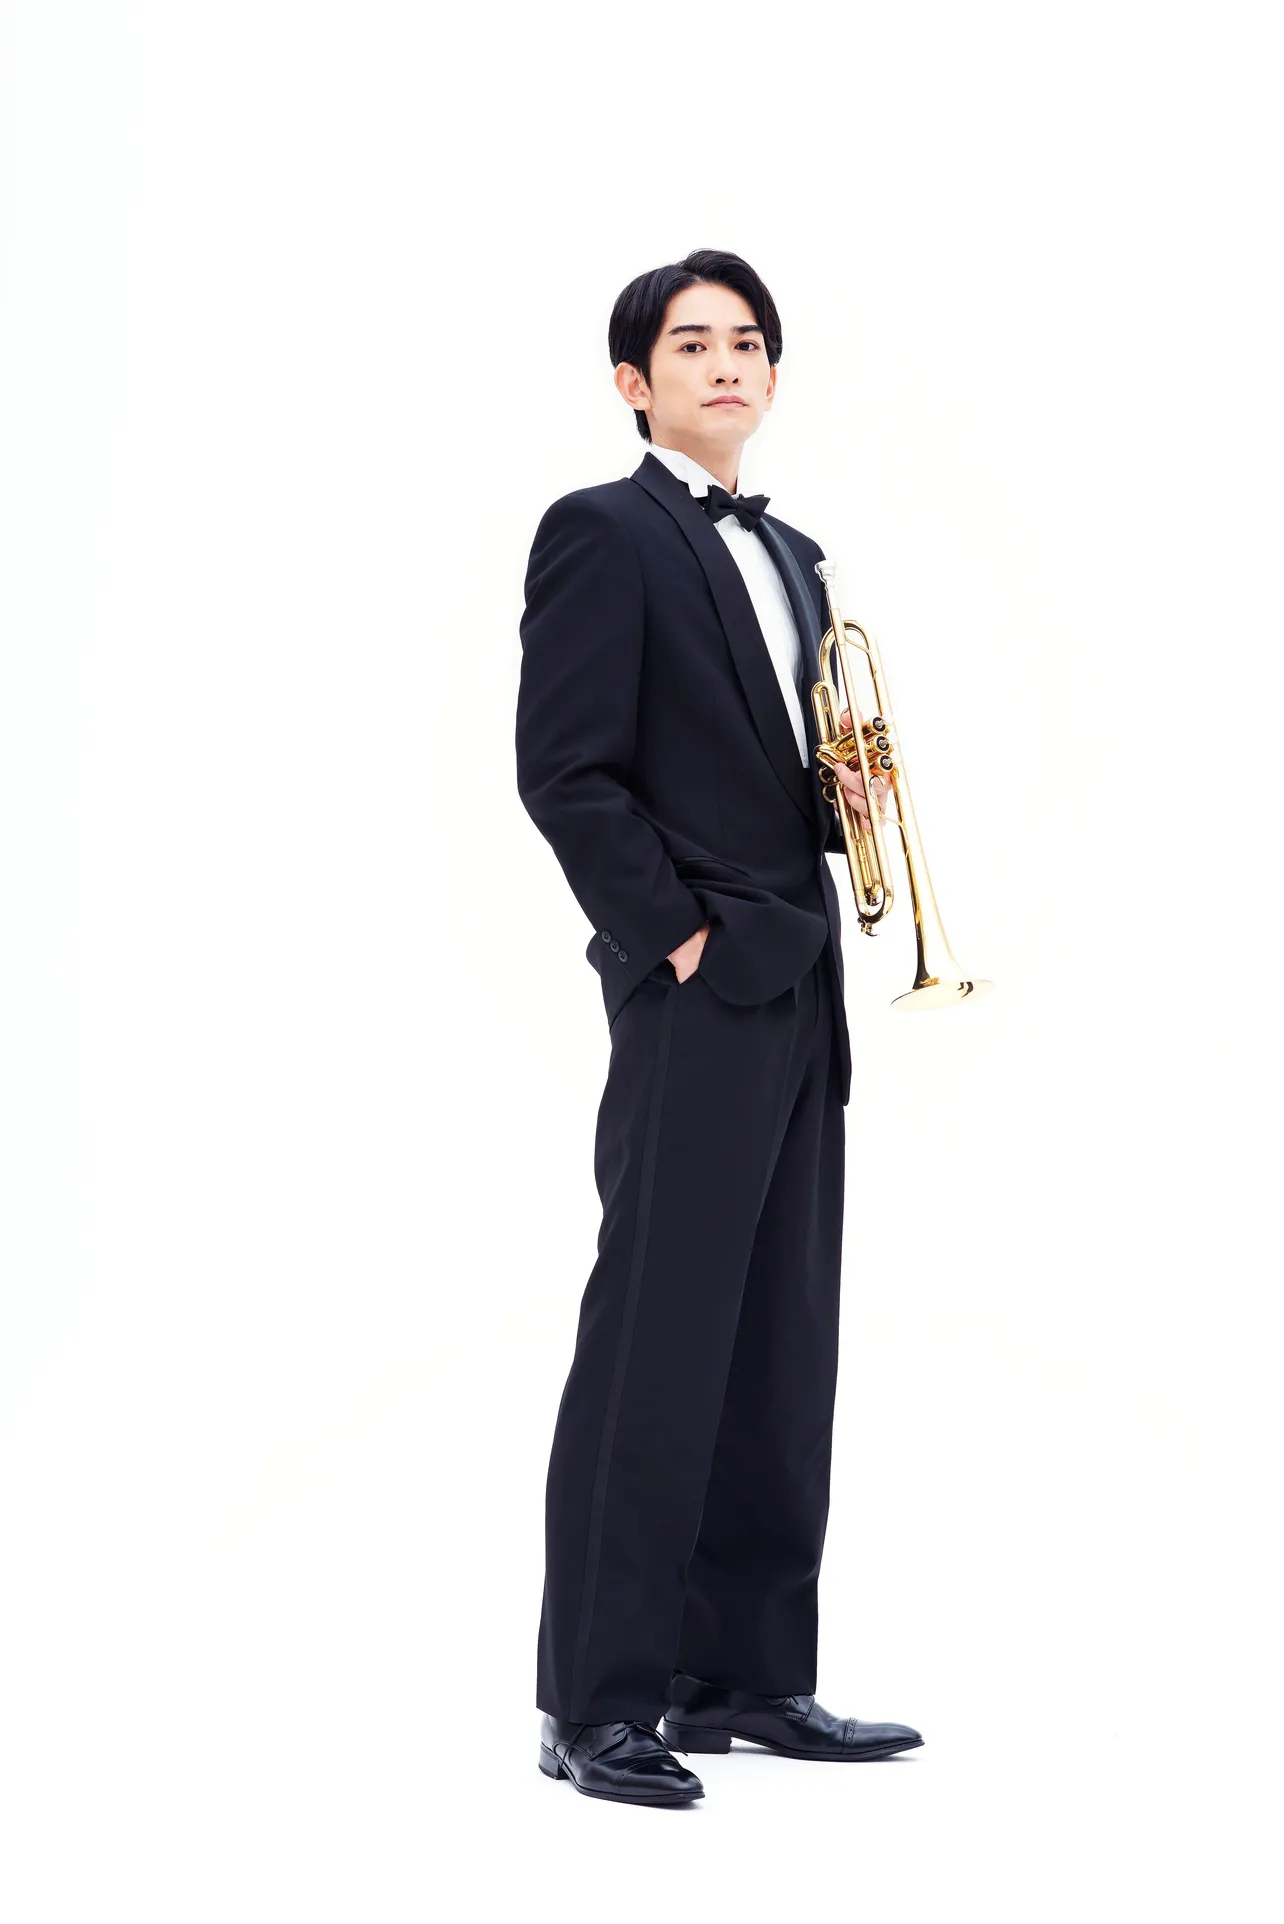 【写真】足の長さ際立つトランペット奏者姿の町田啓太